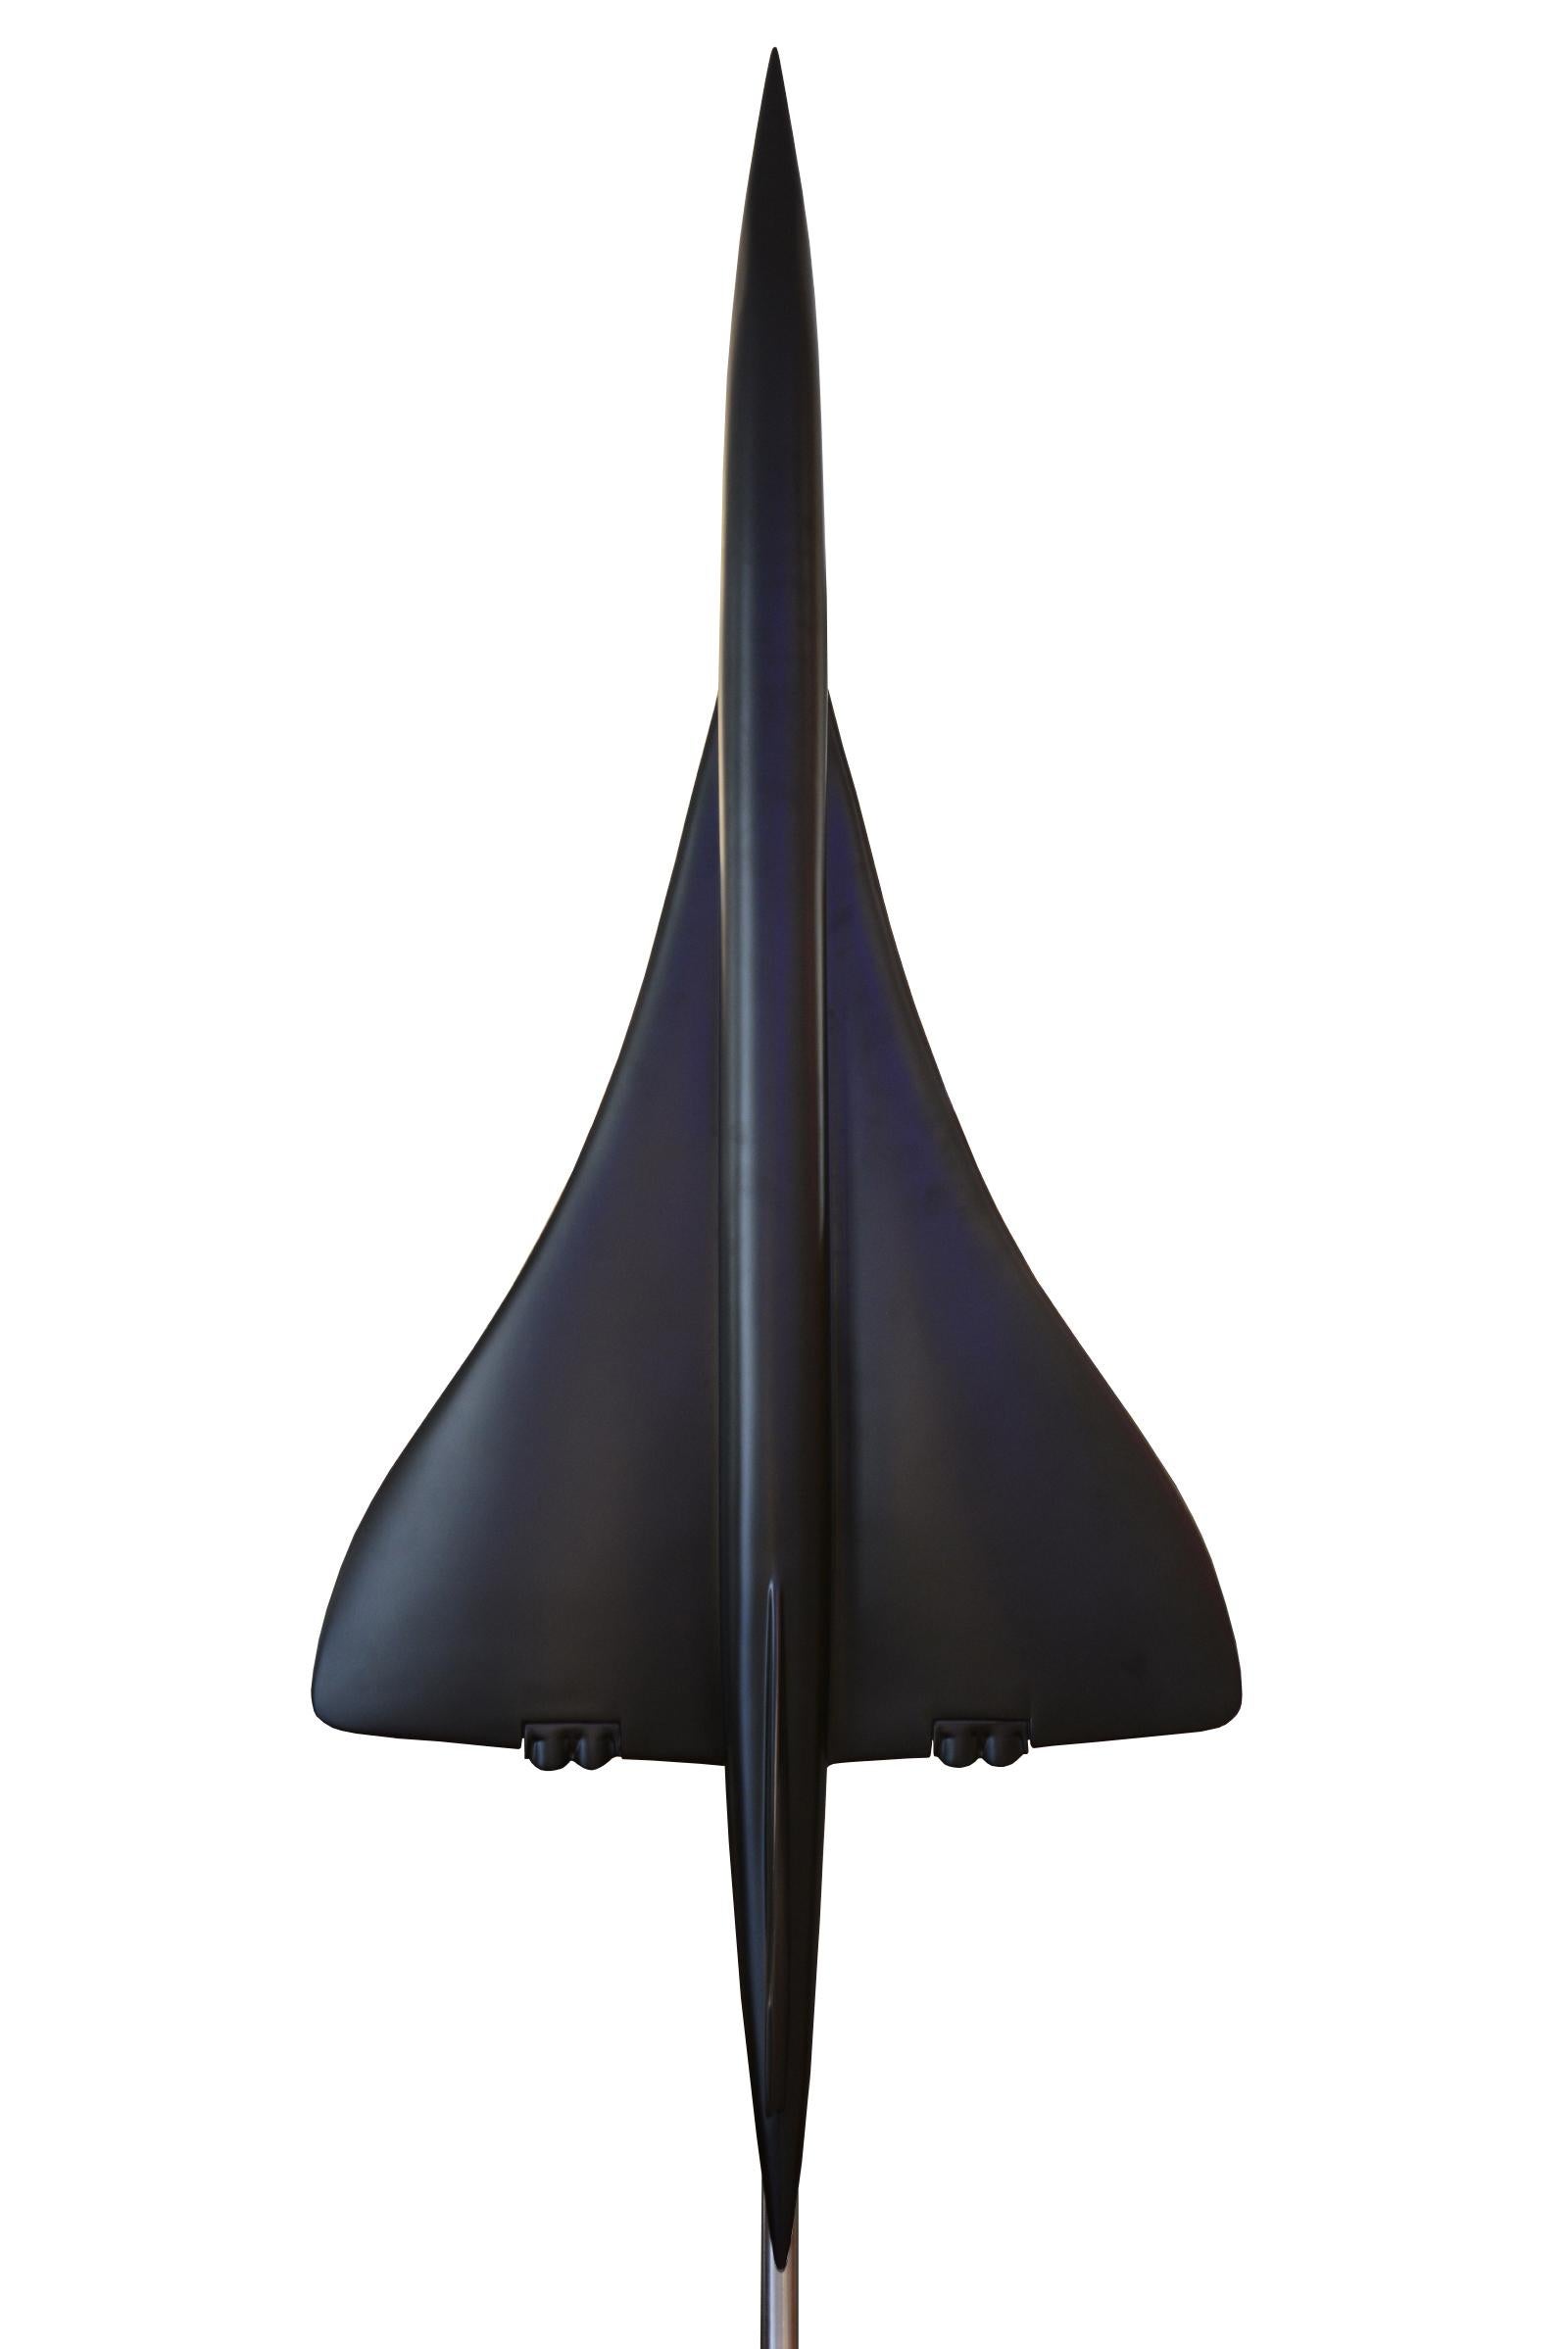 Sculpture Concorde modèle noir en fibre de verre
en noir mat. Echelle 1/36ème sur poli
base en aluminium brossé. Pièce exceptionnelle et unique.
